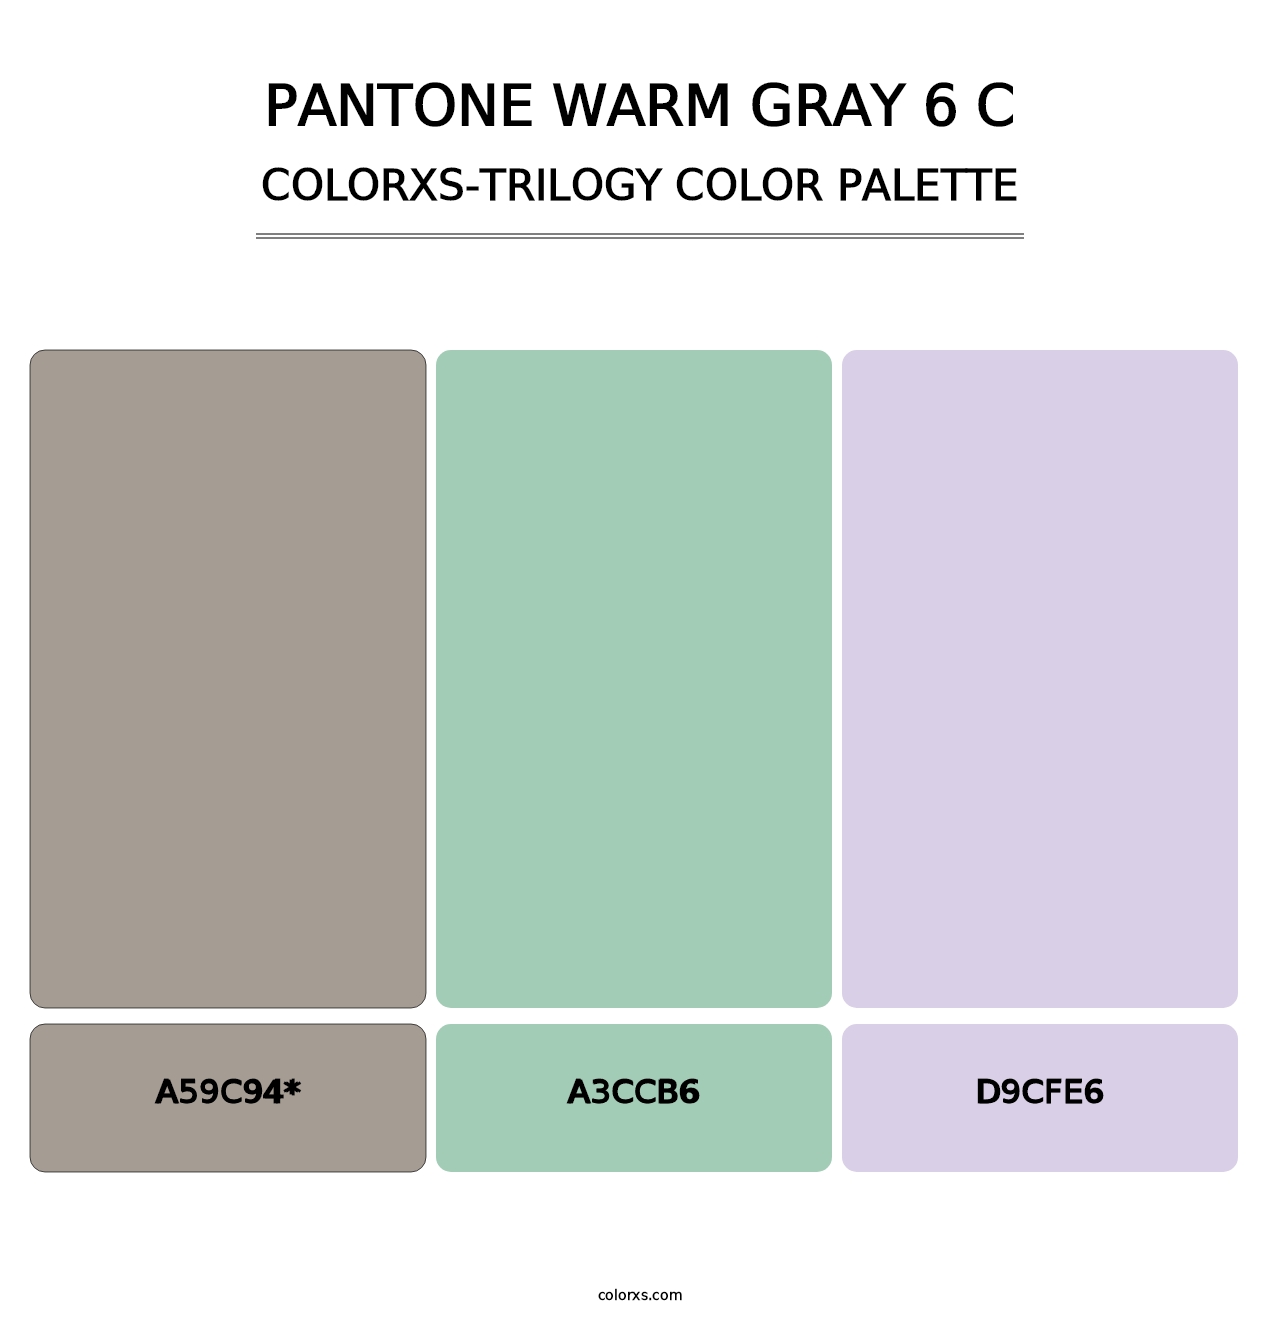 PANTONE Warm Gray 6 C - Colorxs Trilogy Palette